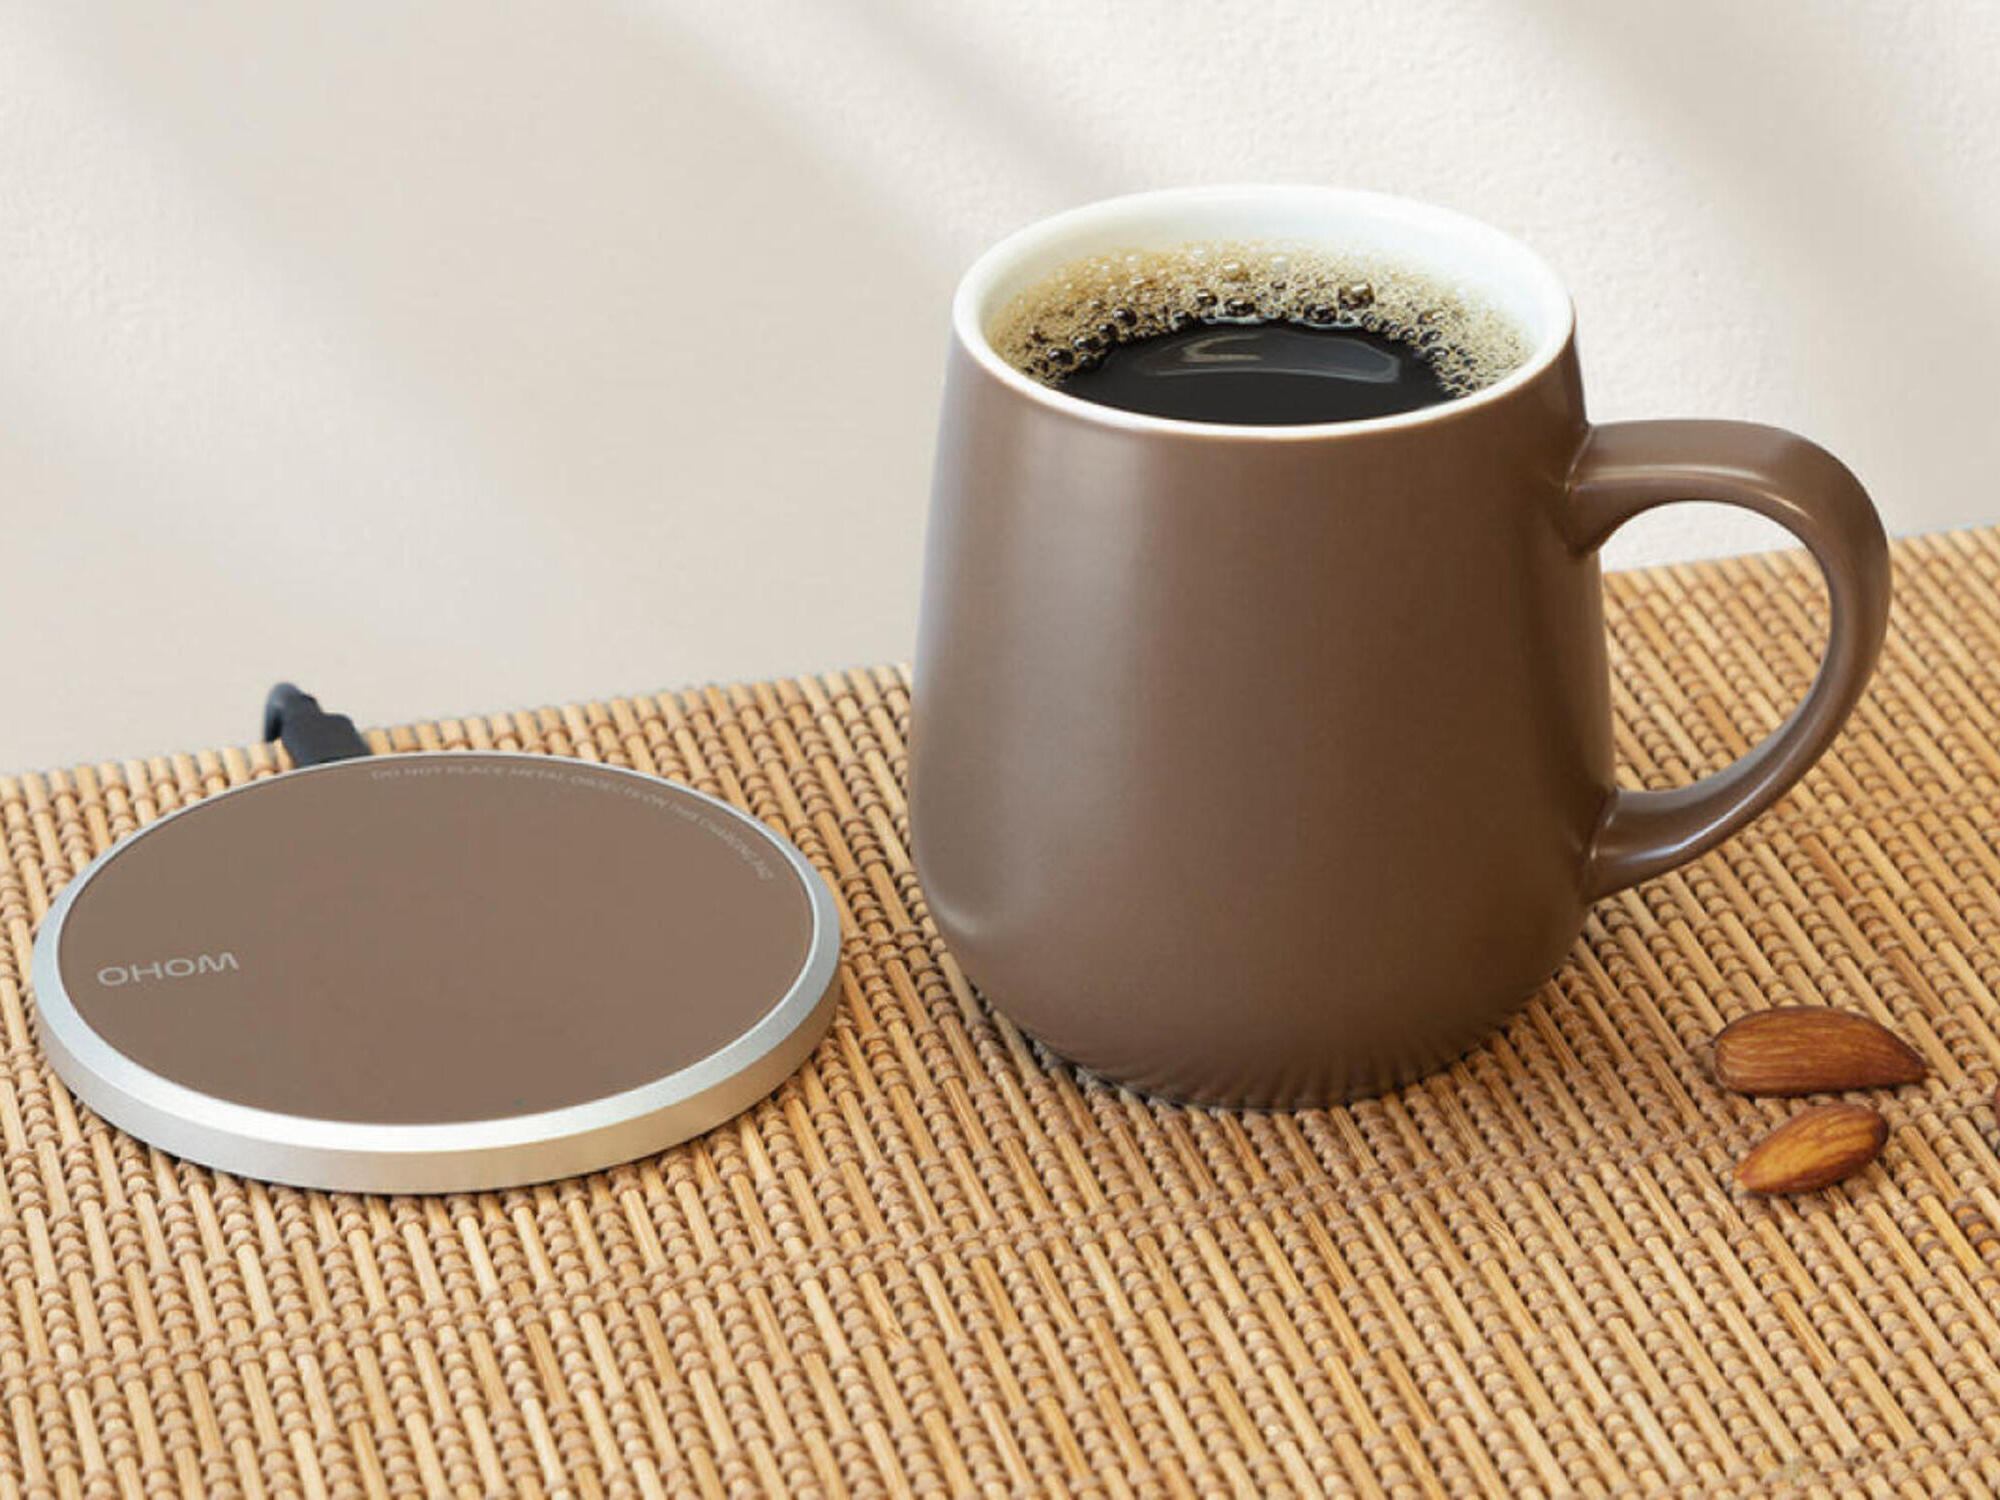  2 in 1 Wireless Charging Pad,Coffee Mug Warmer